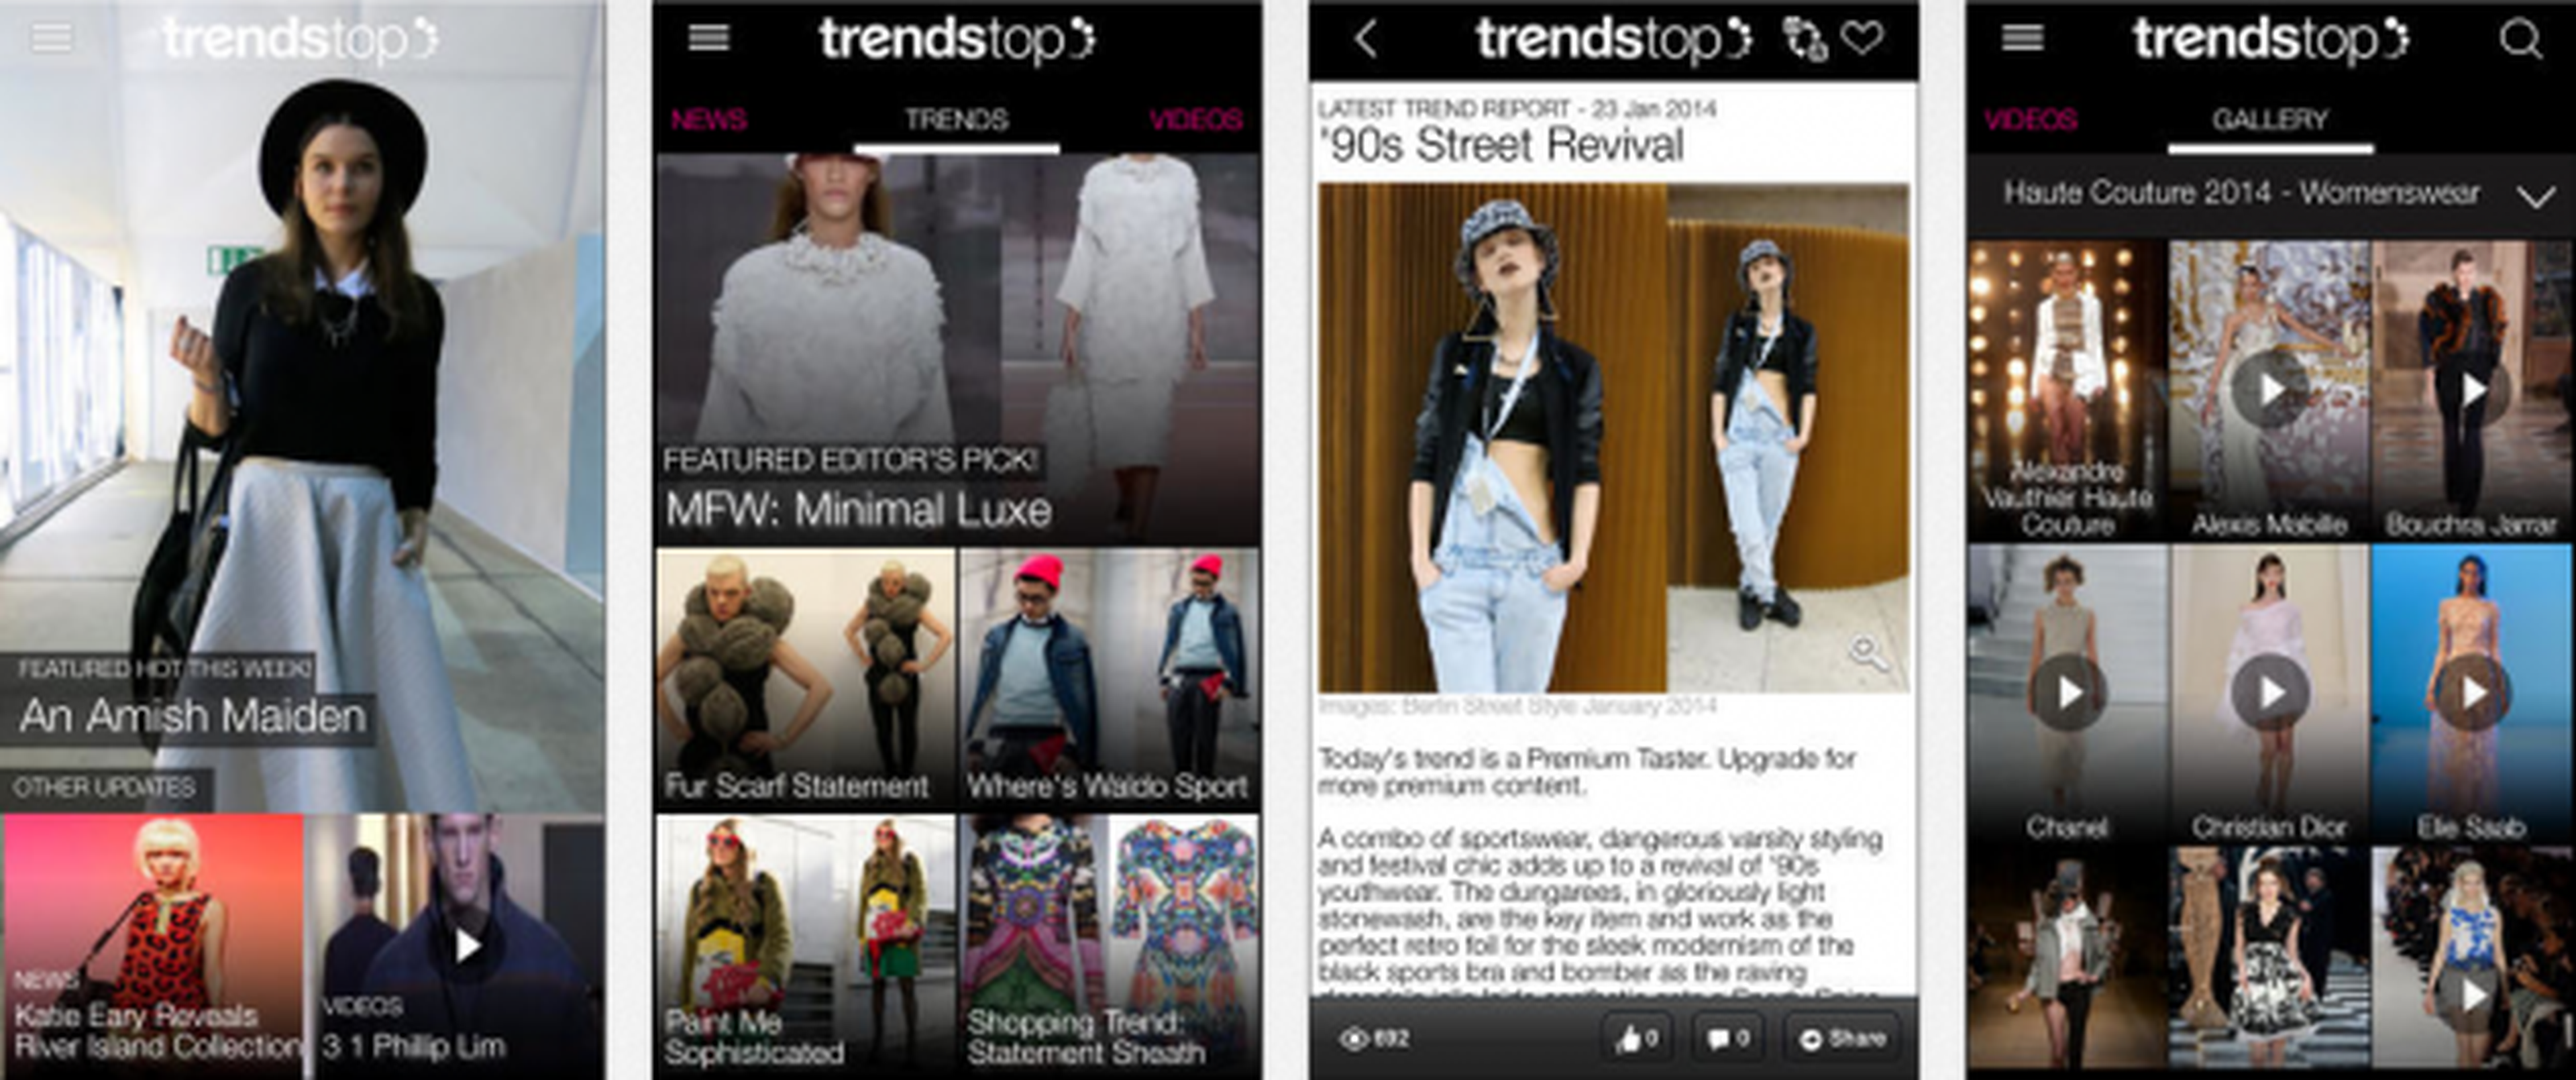 Trendstop aplicación de moda